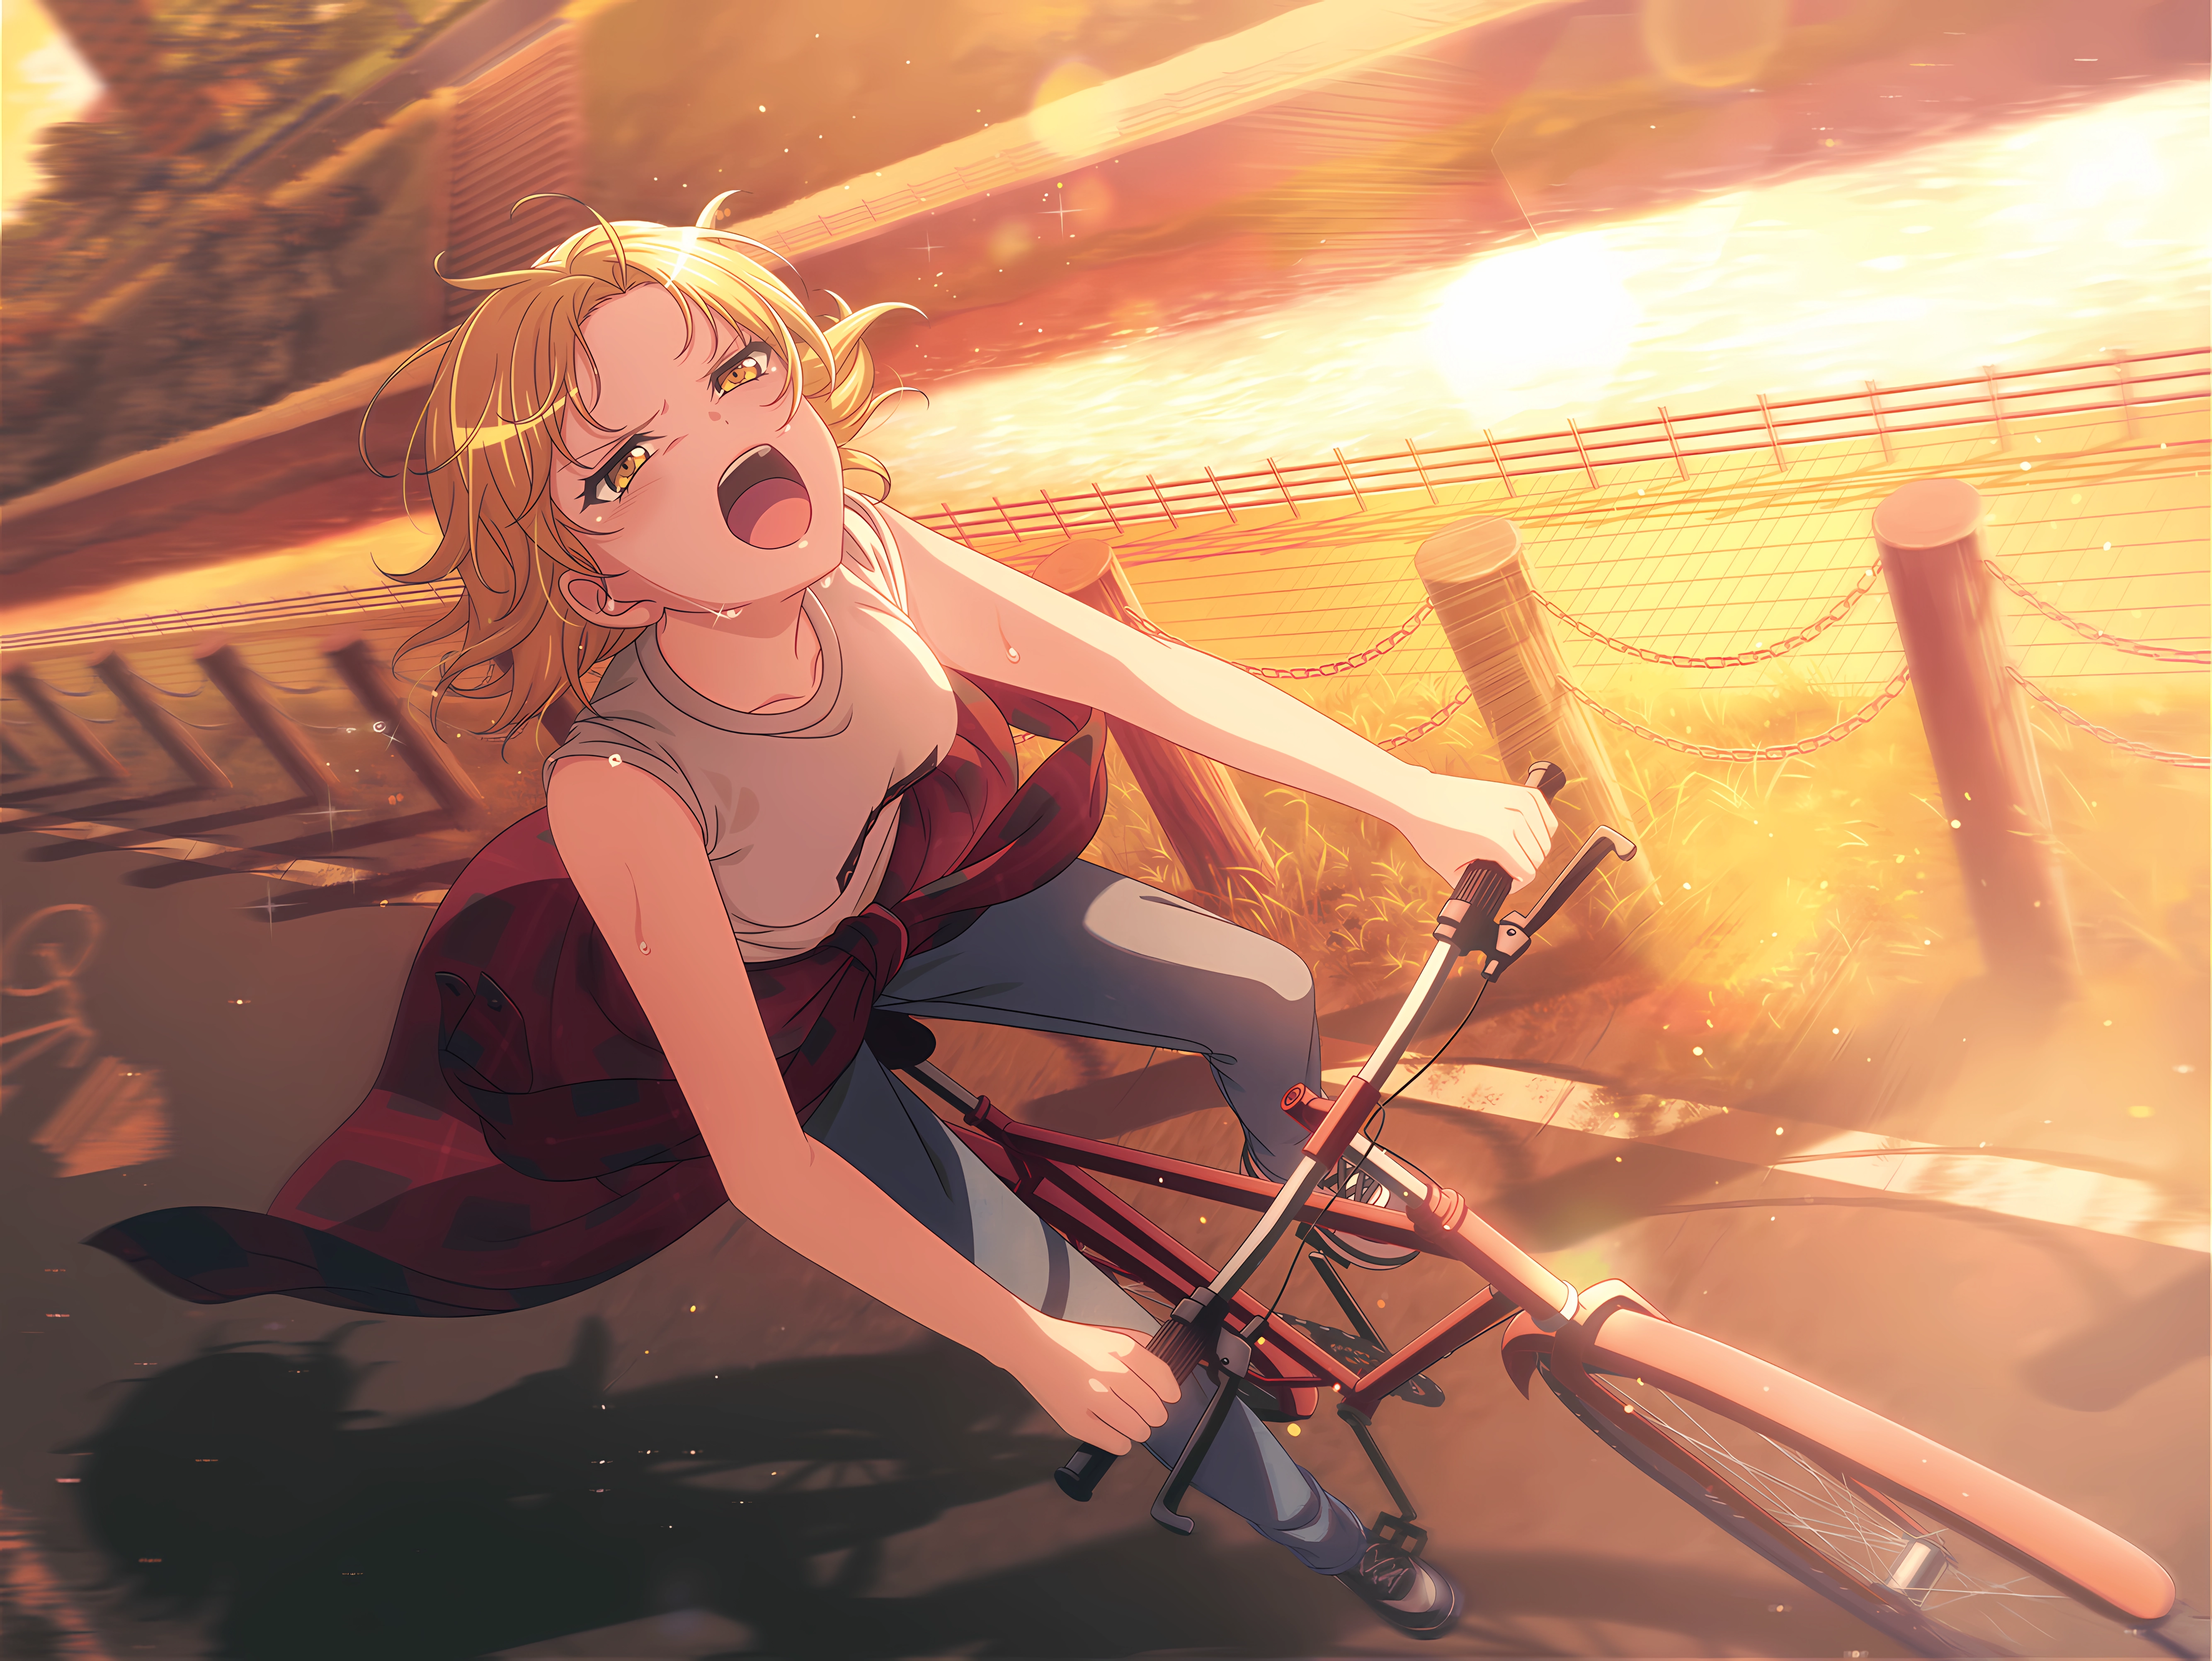 Anime 5336x4008 BanG Dream! anime anime girls Masuki Satou masking bicycle exercise sweat sunset sunset glow open mouth blonde yellow eyes water looking up